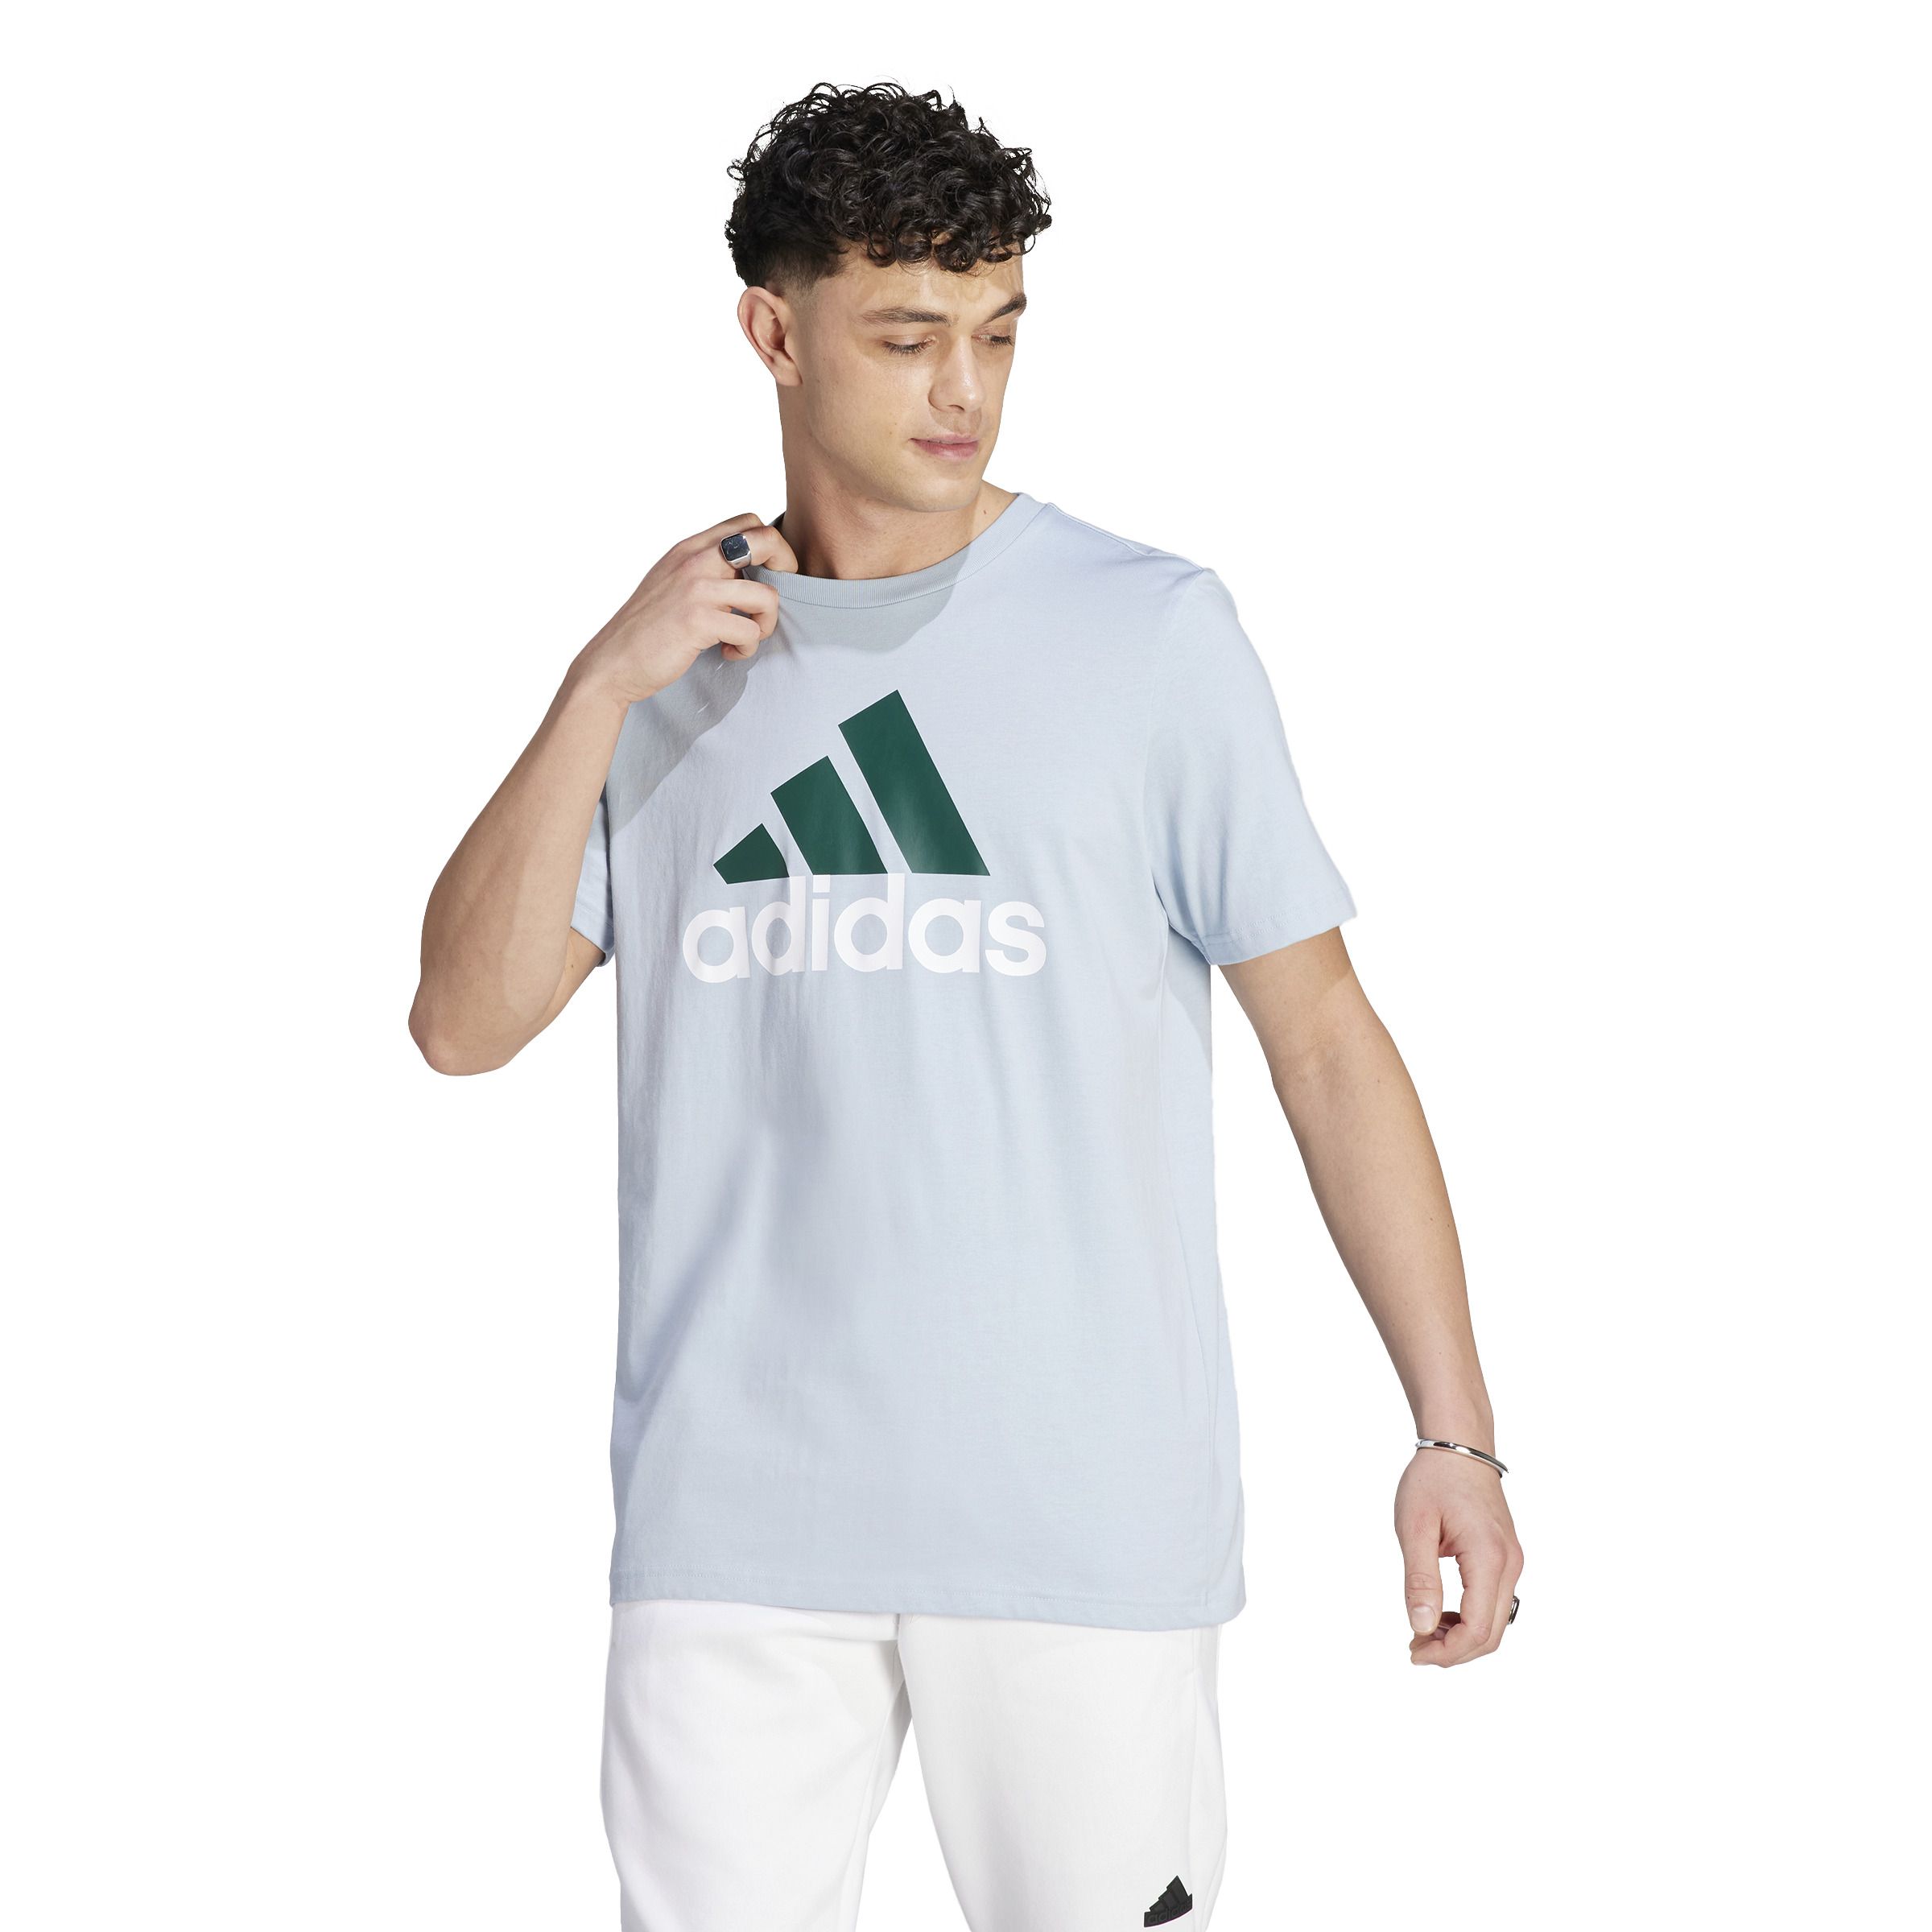 Adidas Sport Essentials Camiseta Deportiva Hombre ESS Mid tee  Camiseta  para hombre, Camisetas deportivas, Adidas camisetas